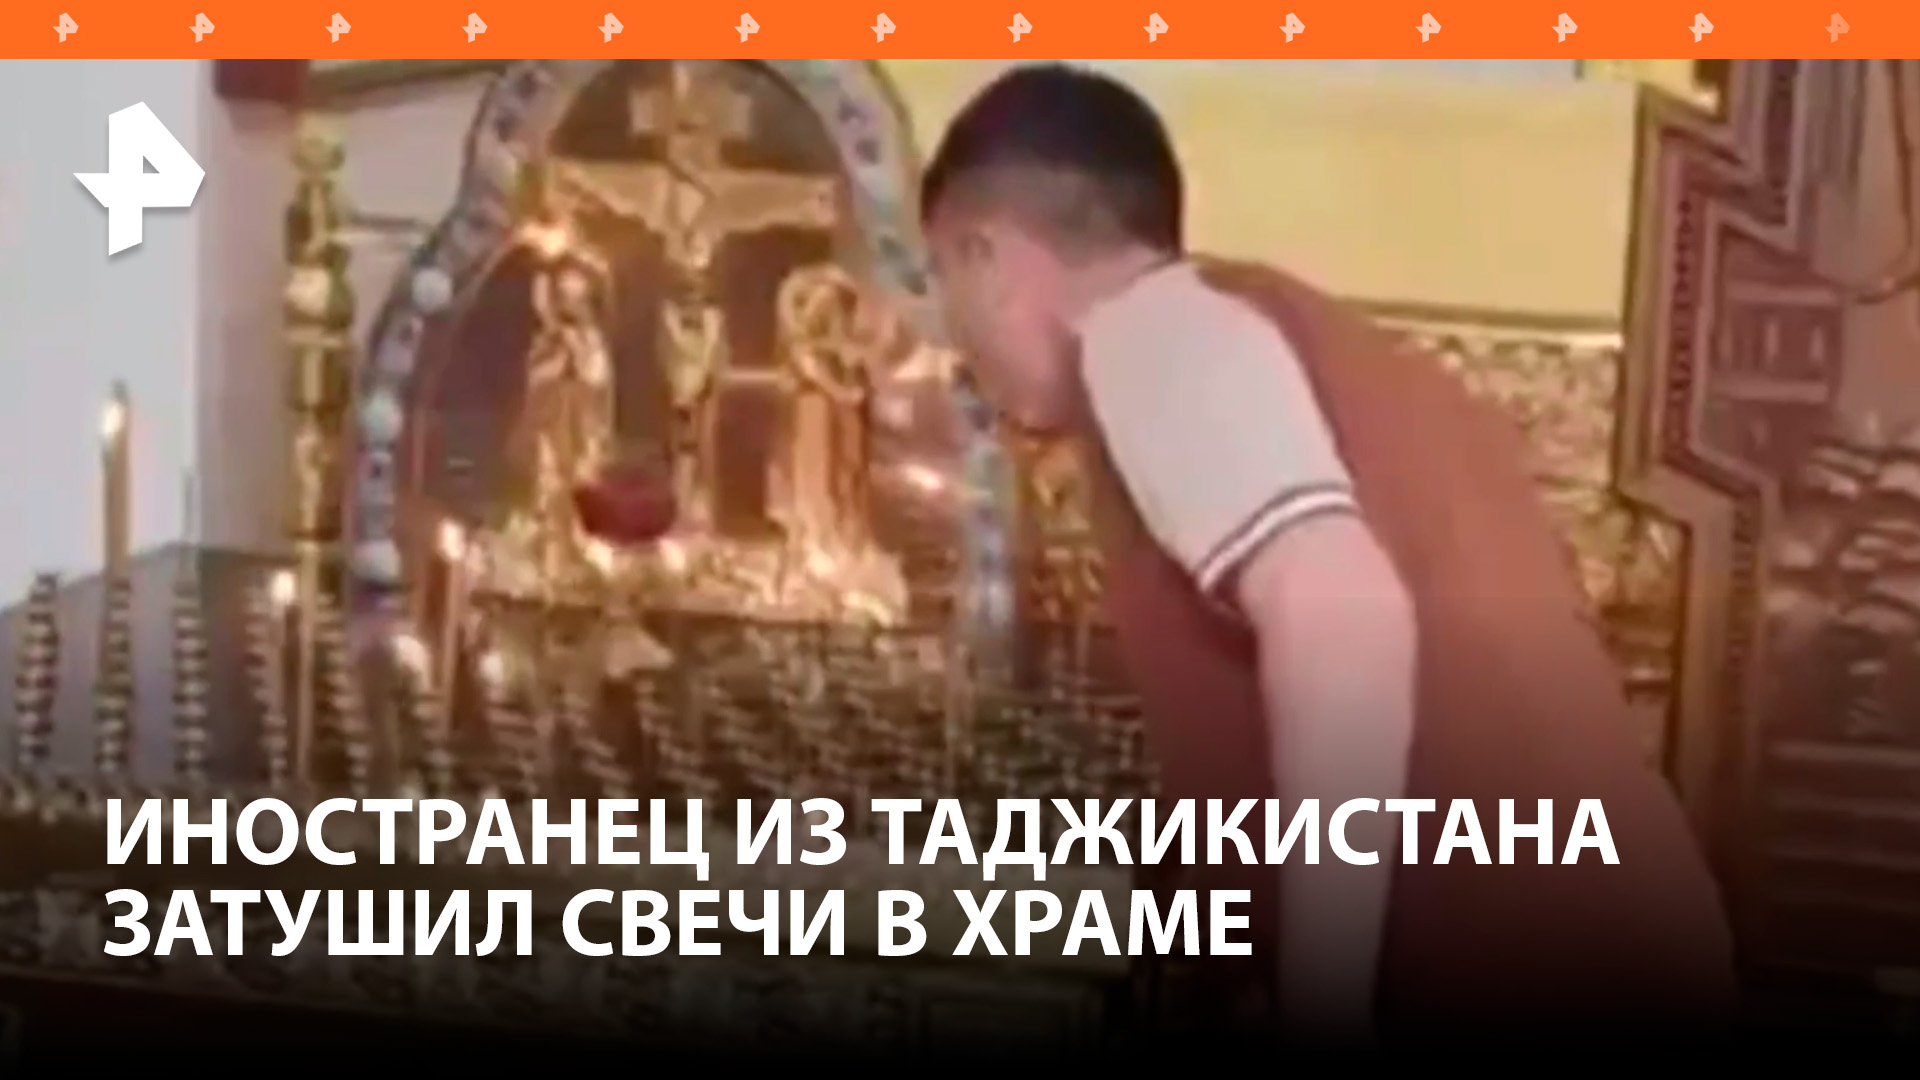 Иностранец потушил свечи в храме, а затем напал на одну из прихожанок на юго-западе Москвы / РЕН